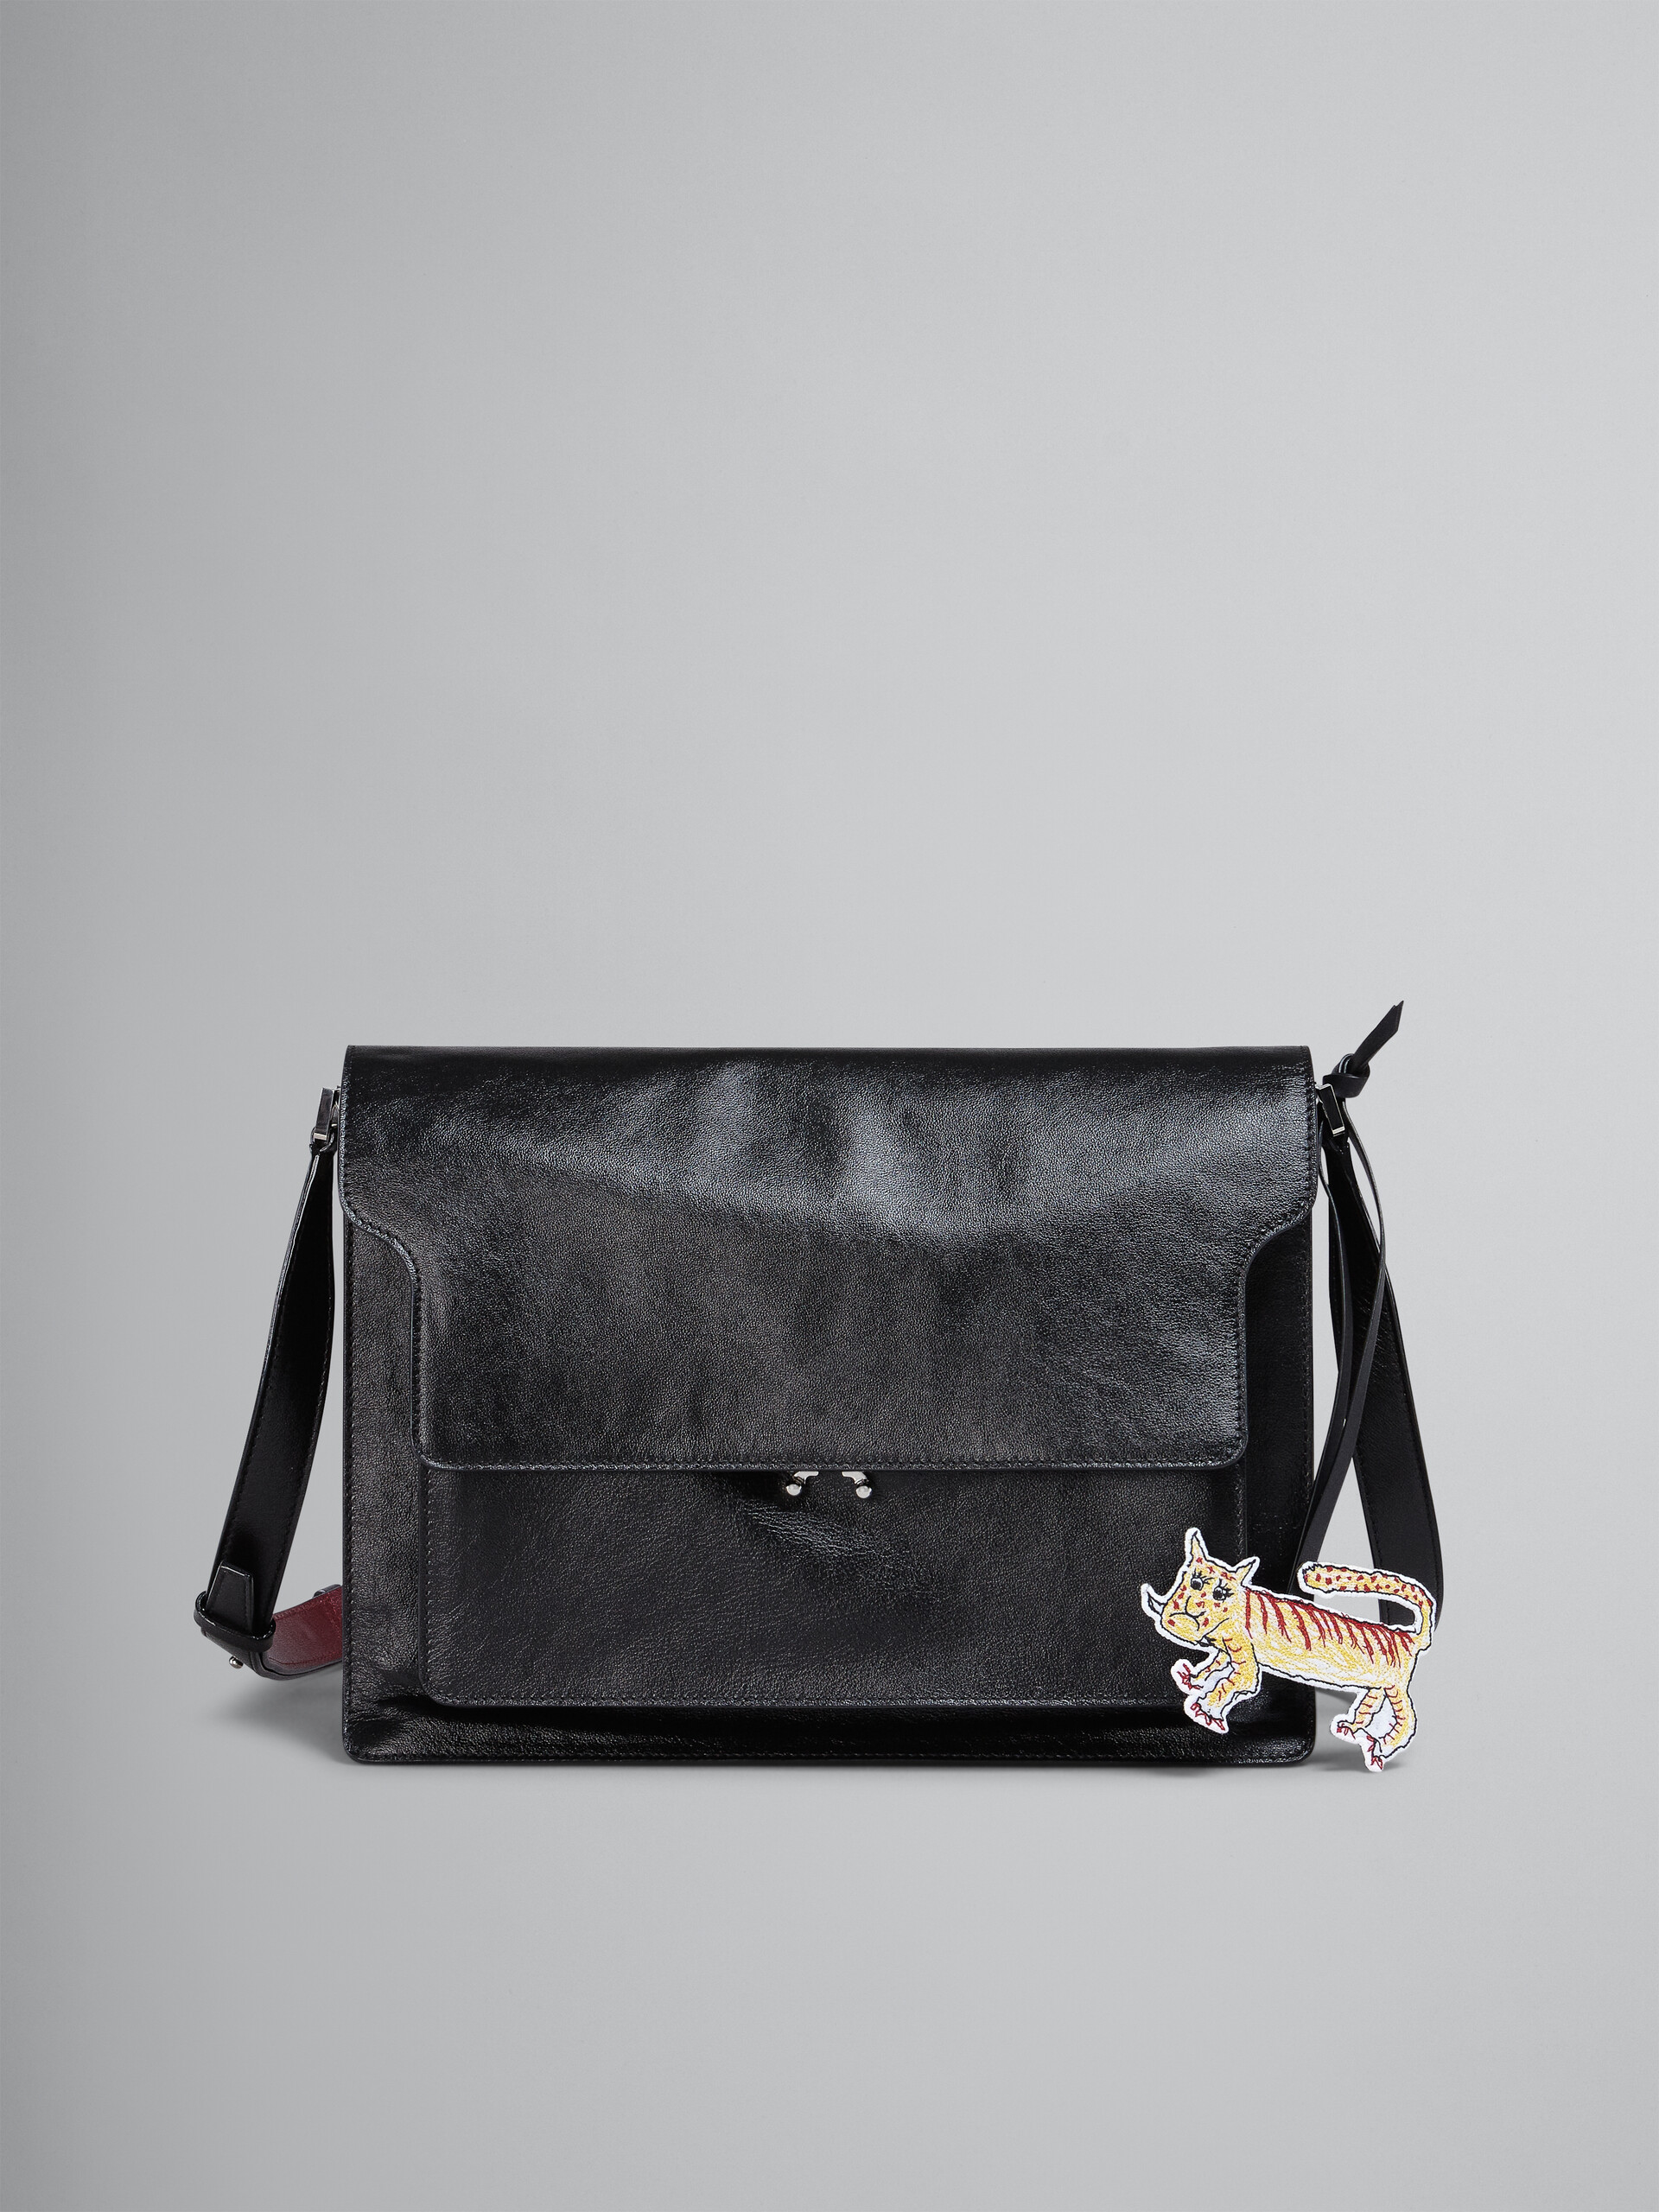 TRUNK SOFT bag in black leather and naif tiger print - Shoulder Bag - Image 1